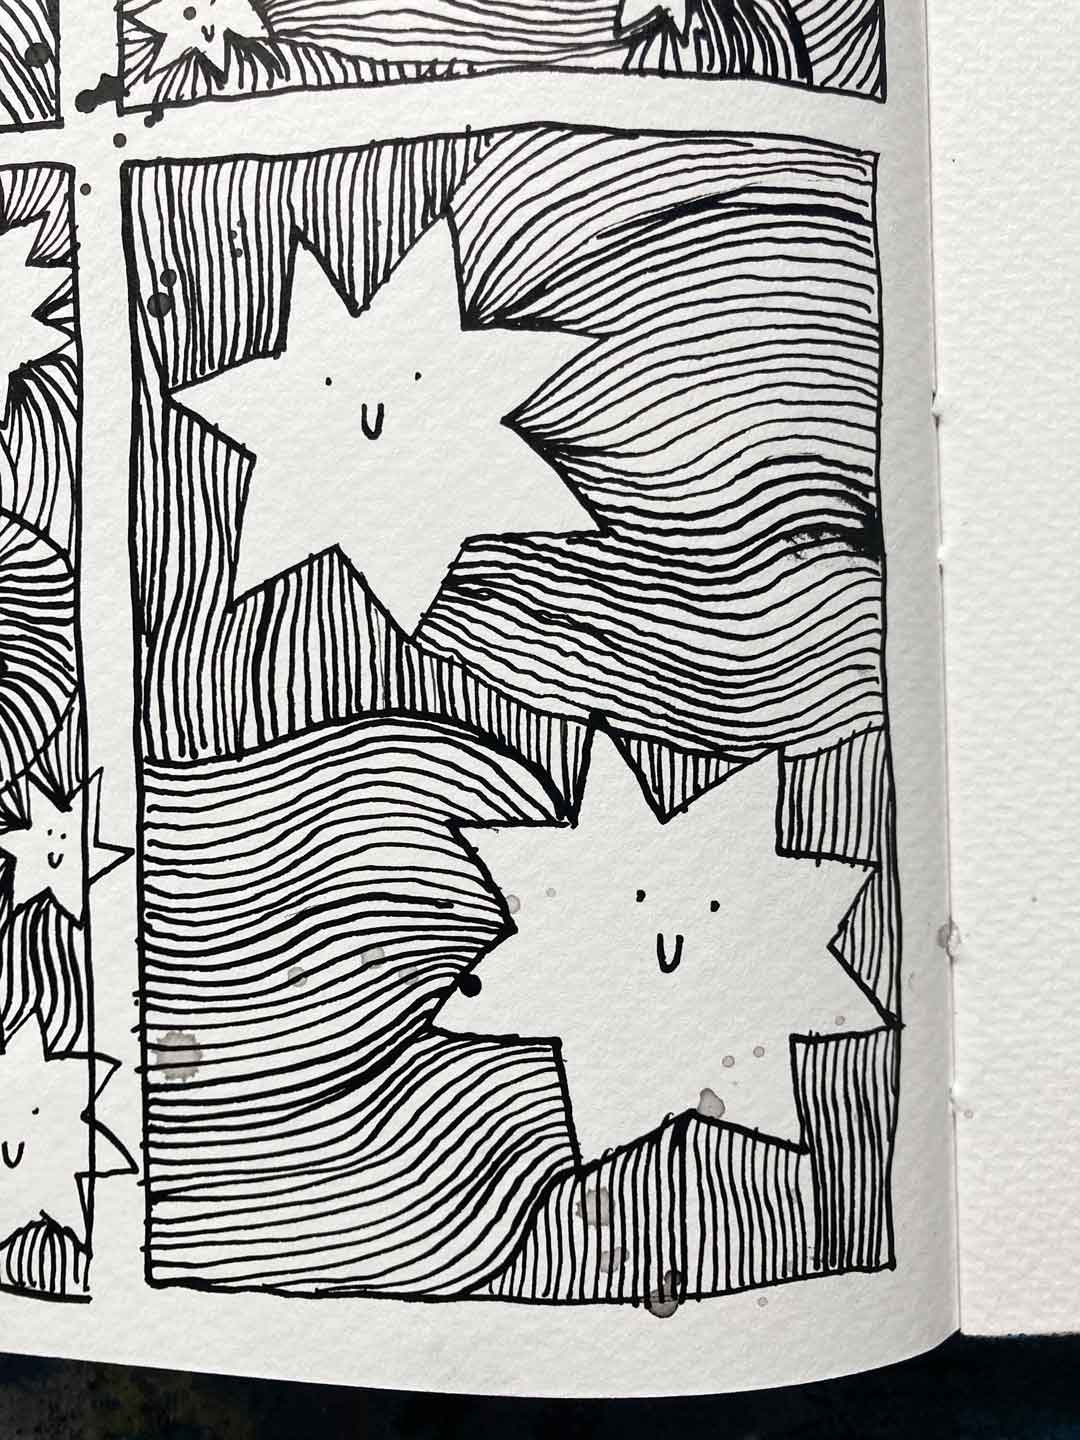 Detail einer Skizzenbuchseite von Tabea Heinicker: Mit Feder und schwarzer Tusche gezeichnete Sterne mit und ohne Schweif